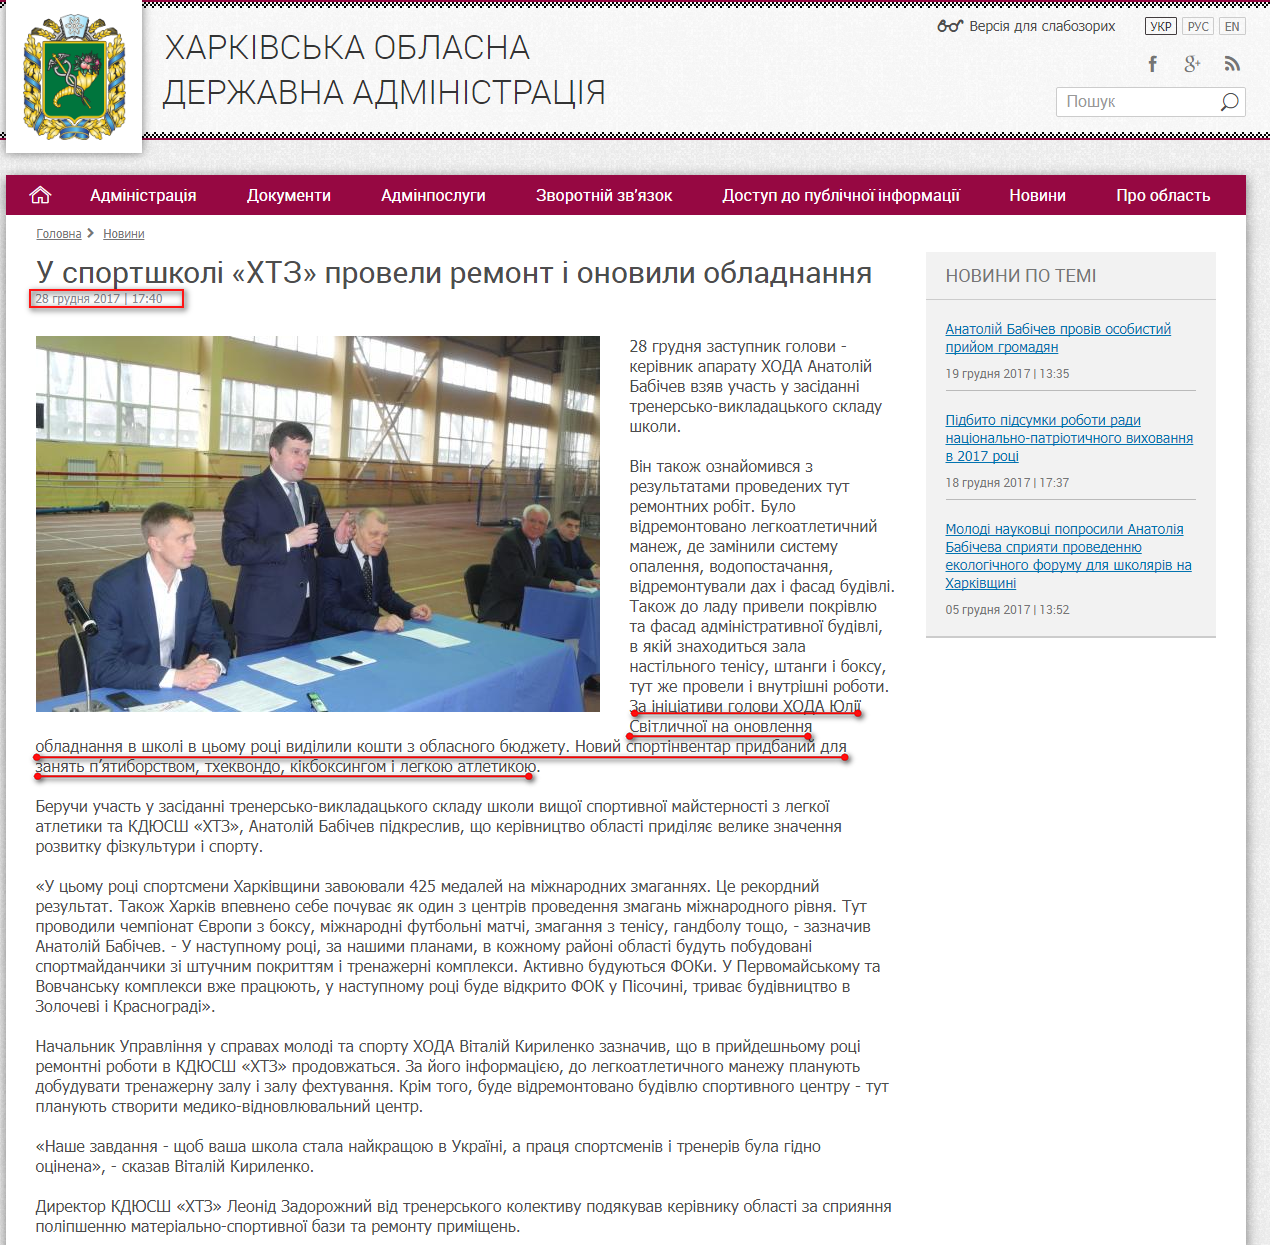 http://kharkivoda.gov.ua/news/90375